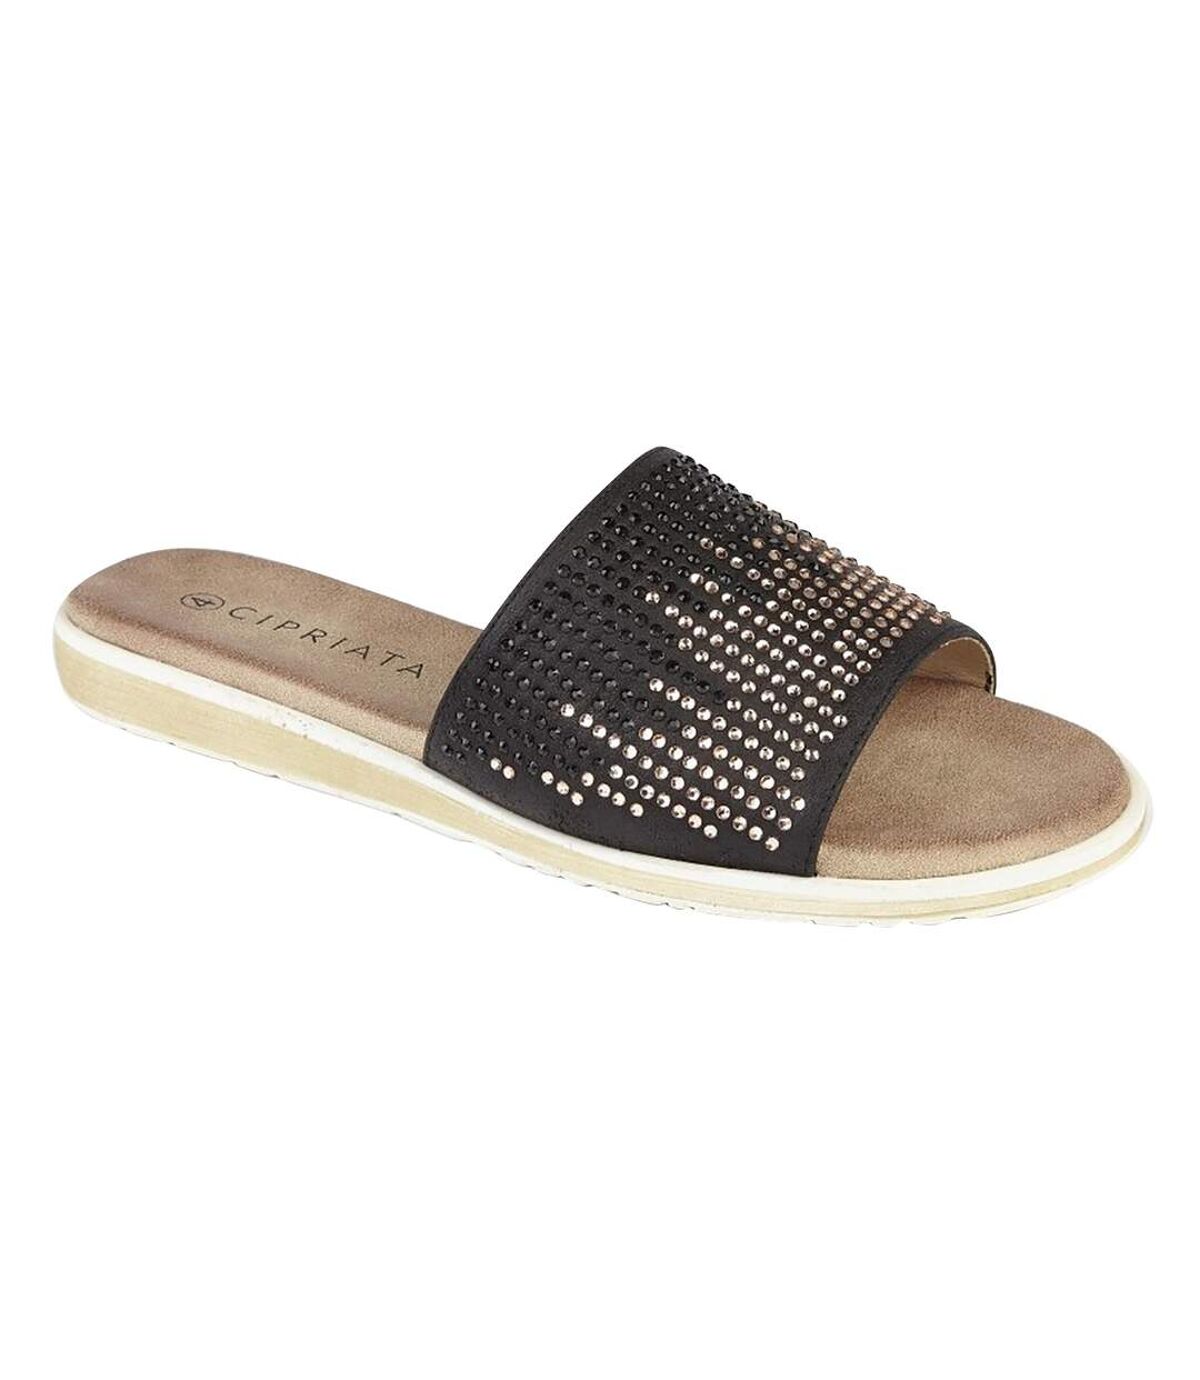 Cipriata Womens/Ladies Diamante Mule Sandals (Black) - UTDF1762